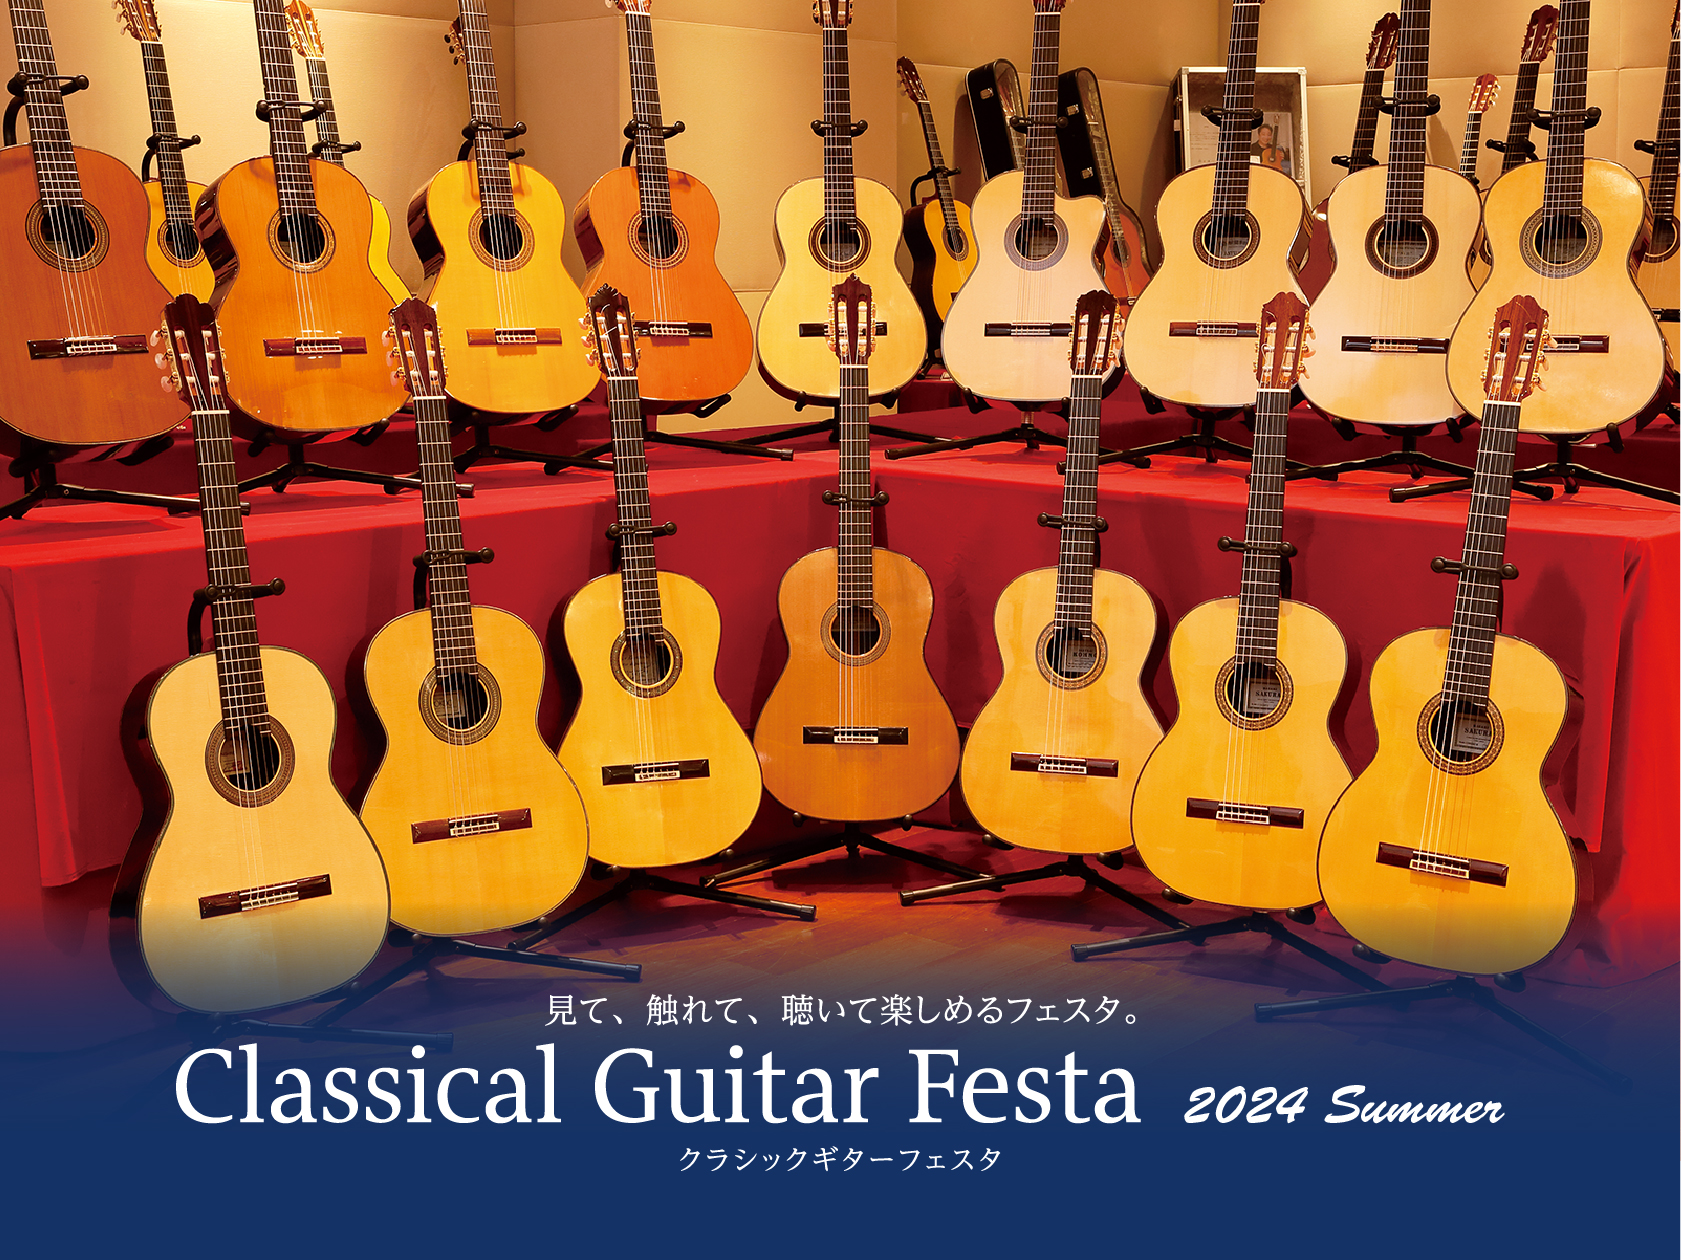 毎年夏と冬に開催しておりますクラシックギターフェスタ。今回もクラシックギターフェスタin磐田を開催致します！！魅力的なギター展示はもちろん、イベントも盛りだくさん。こちらは事前予約が必要ですので、ぜひ、下記参照のうえお申込みをお願い致します。 お申込み方法 すべてのイベントのご予約開始は06月01日 […]